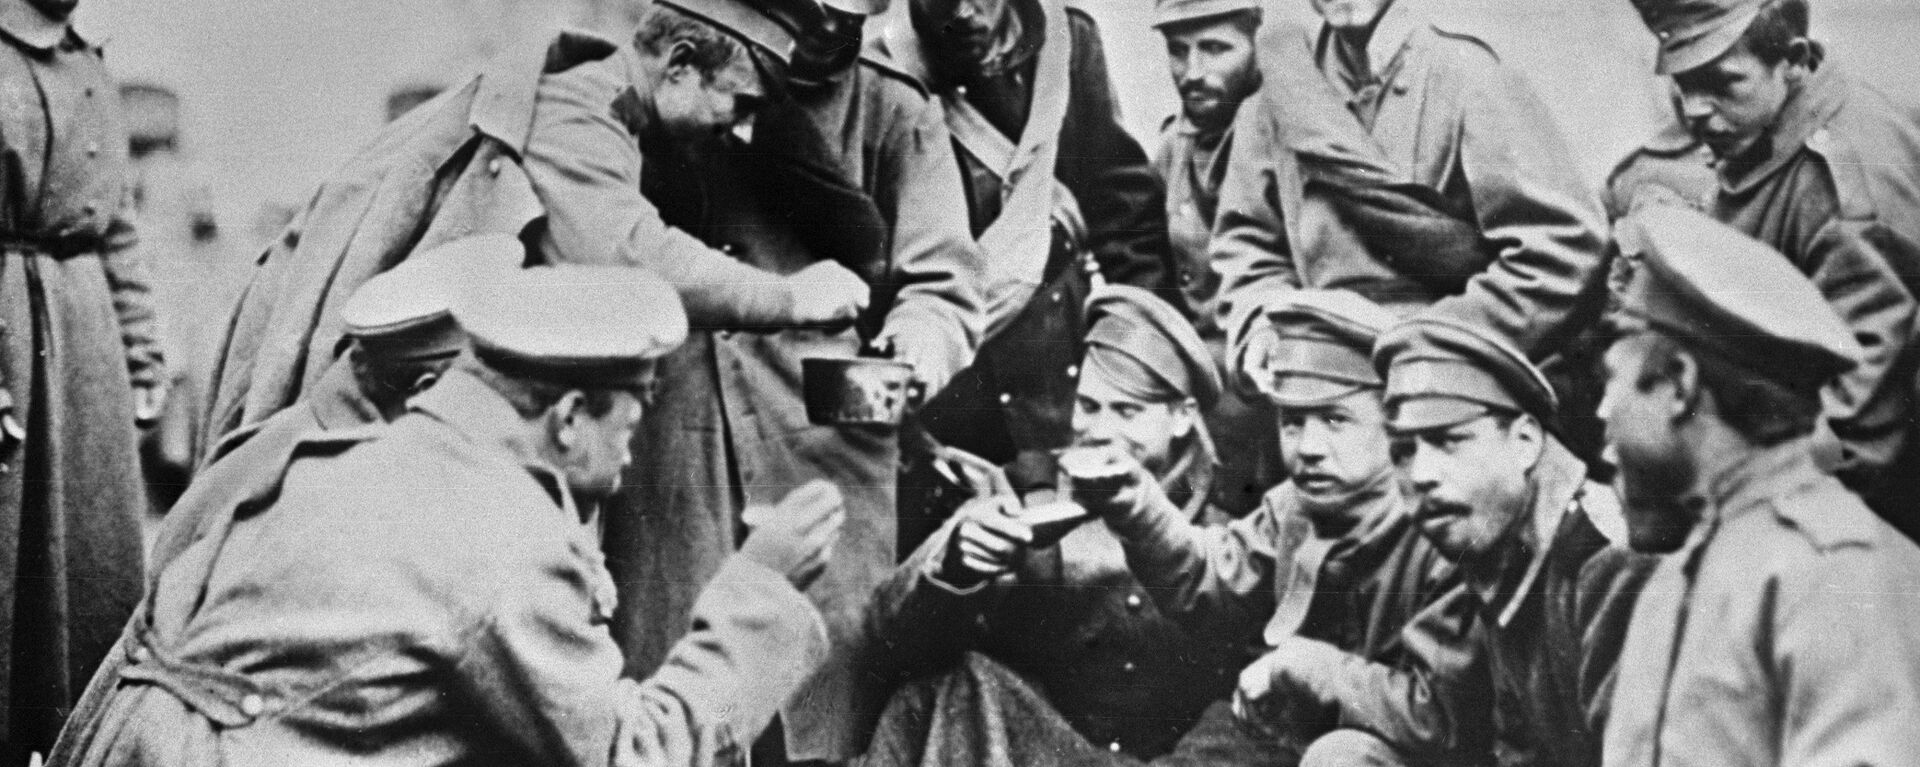 Ruski vojnici sipaju supu Austrijancu na rusko-nemačkom frontu - Sputnik Srbija, 1920, 08.11.2018